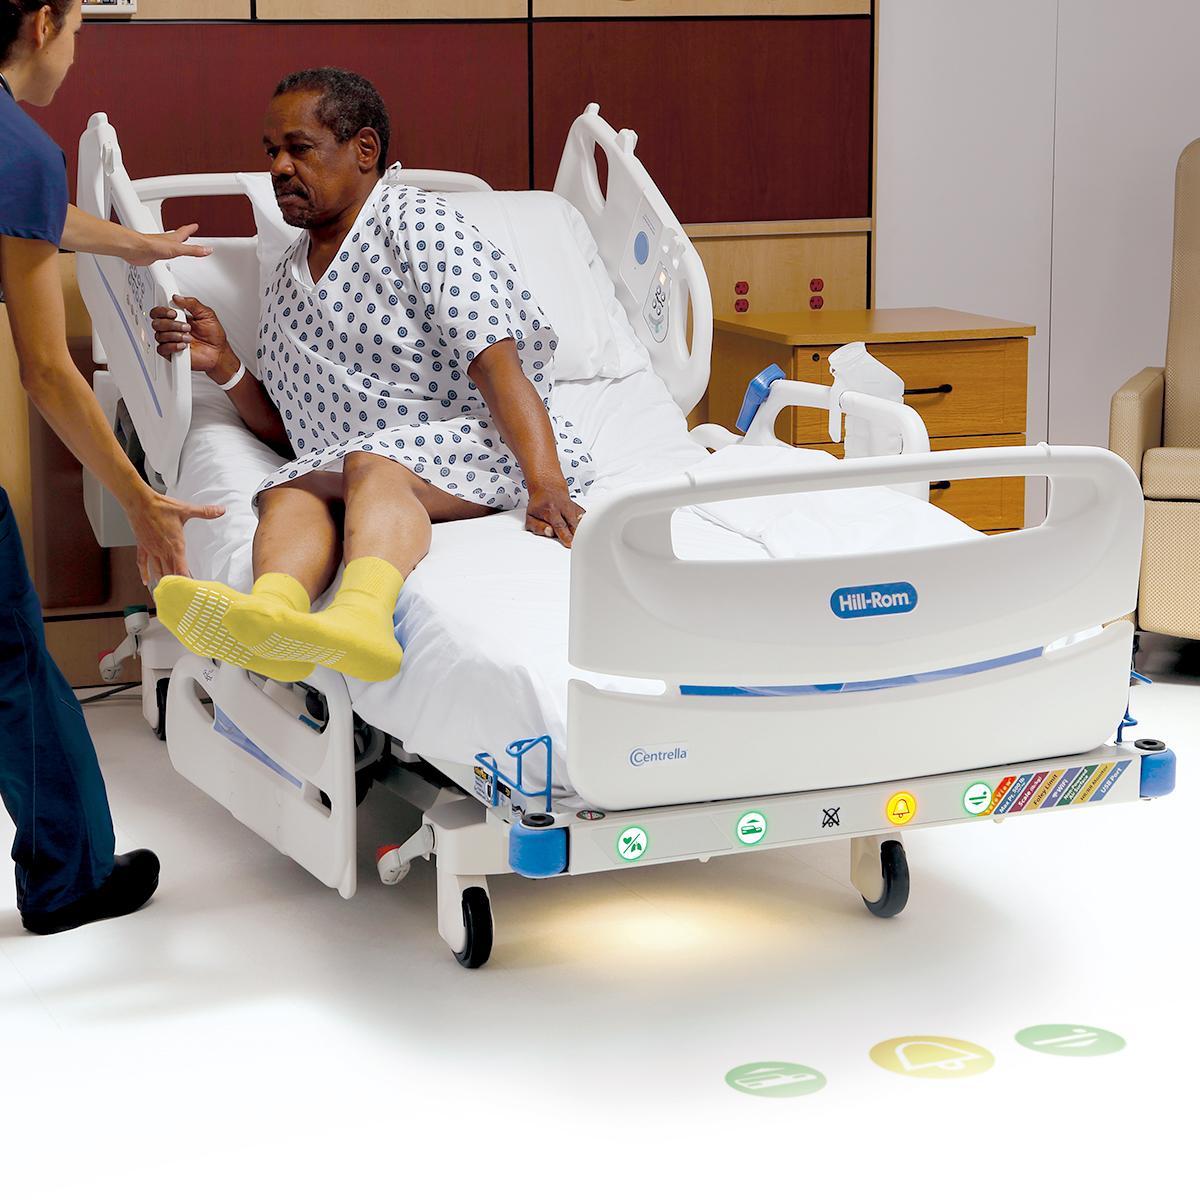 男性患者がセントレラ SmartPlus ベッドから離床するのを補助する女性医師